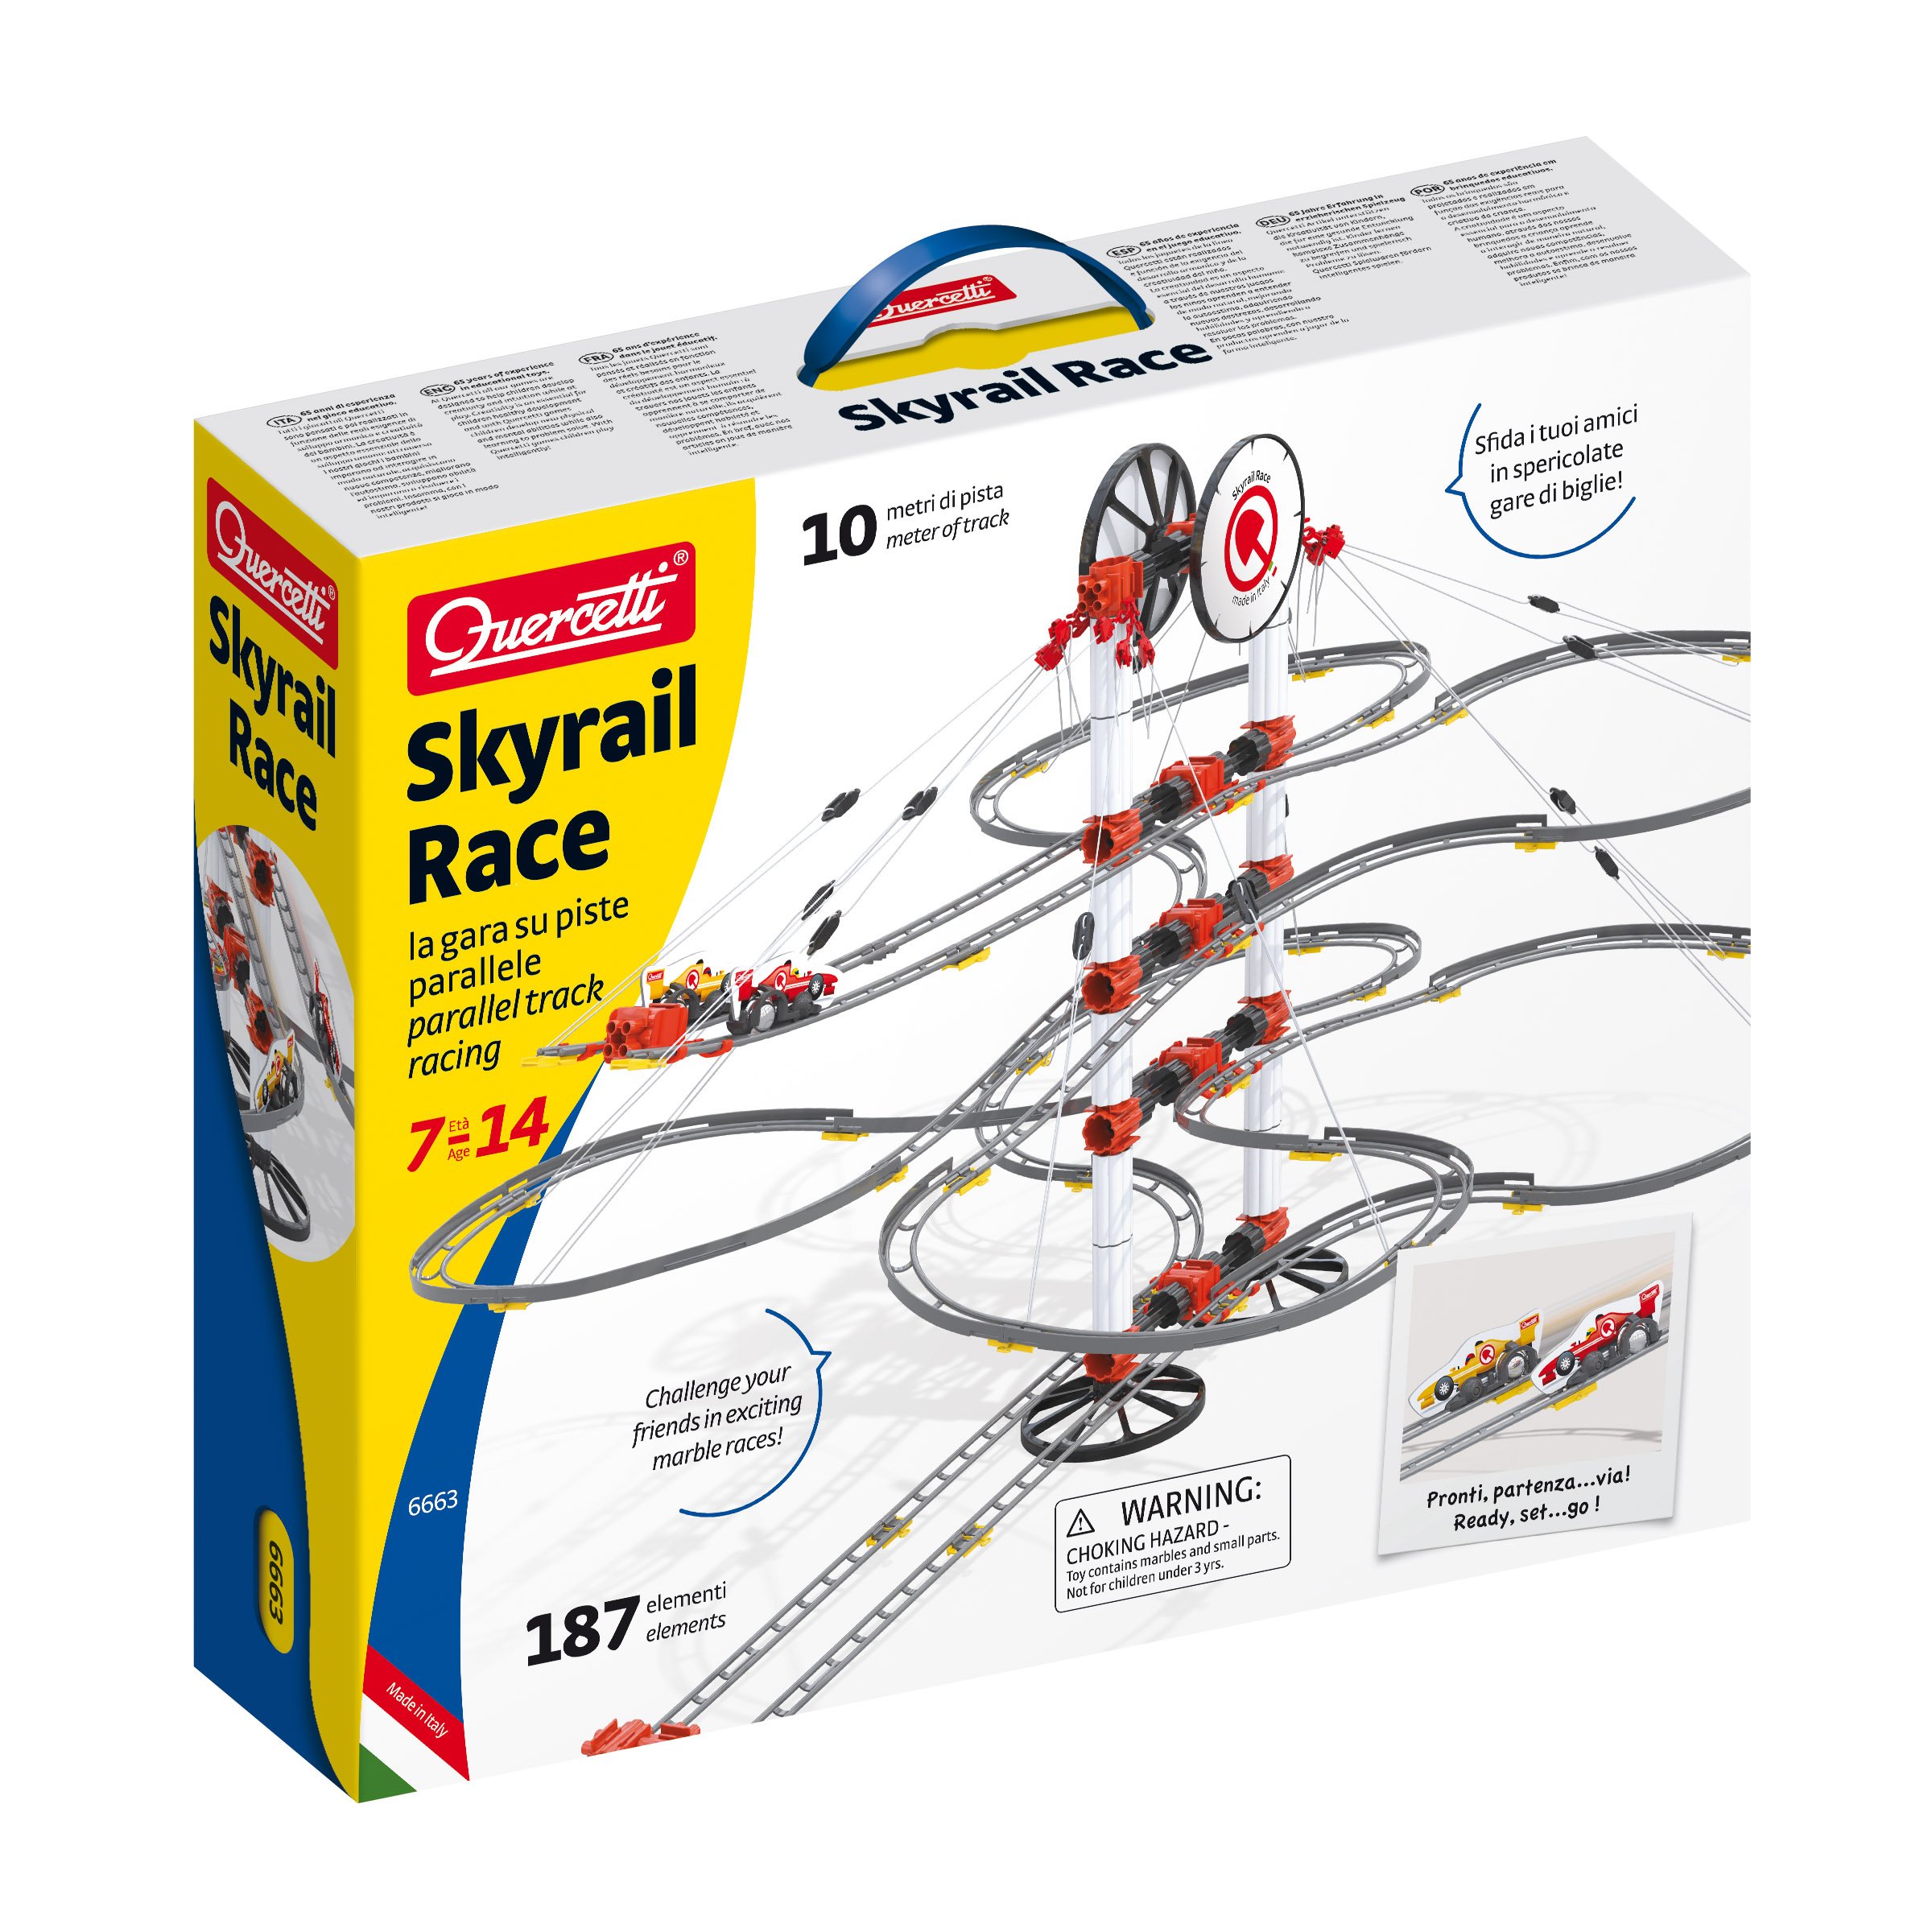 Quercetti Skyrail Race